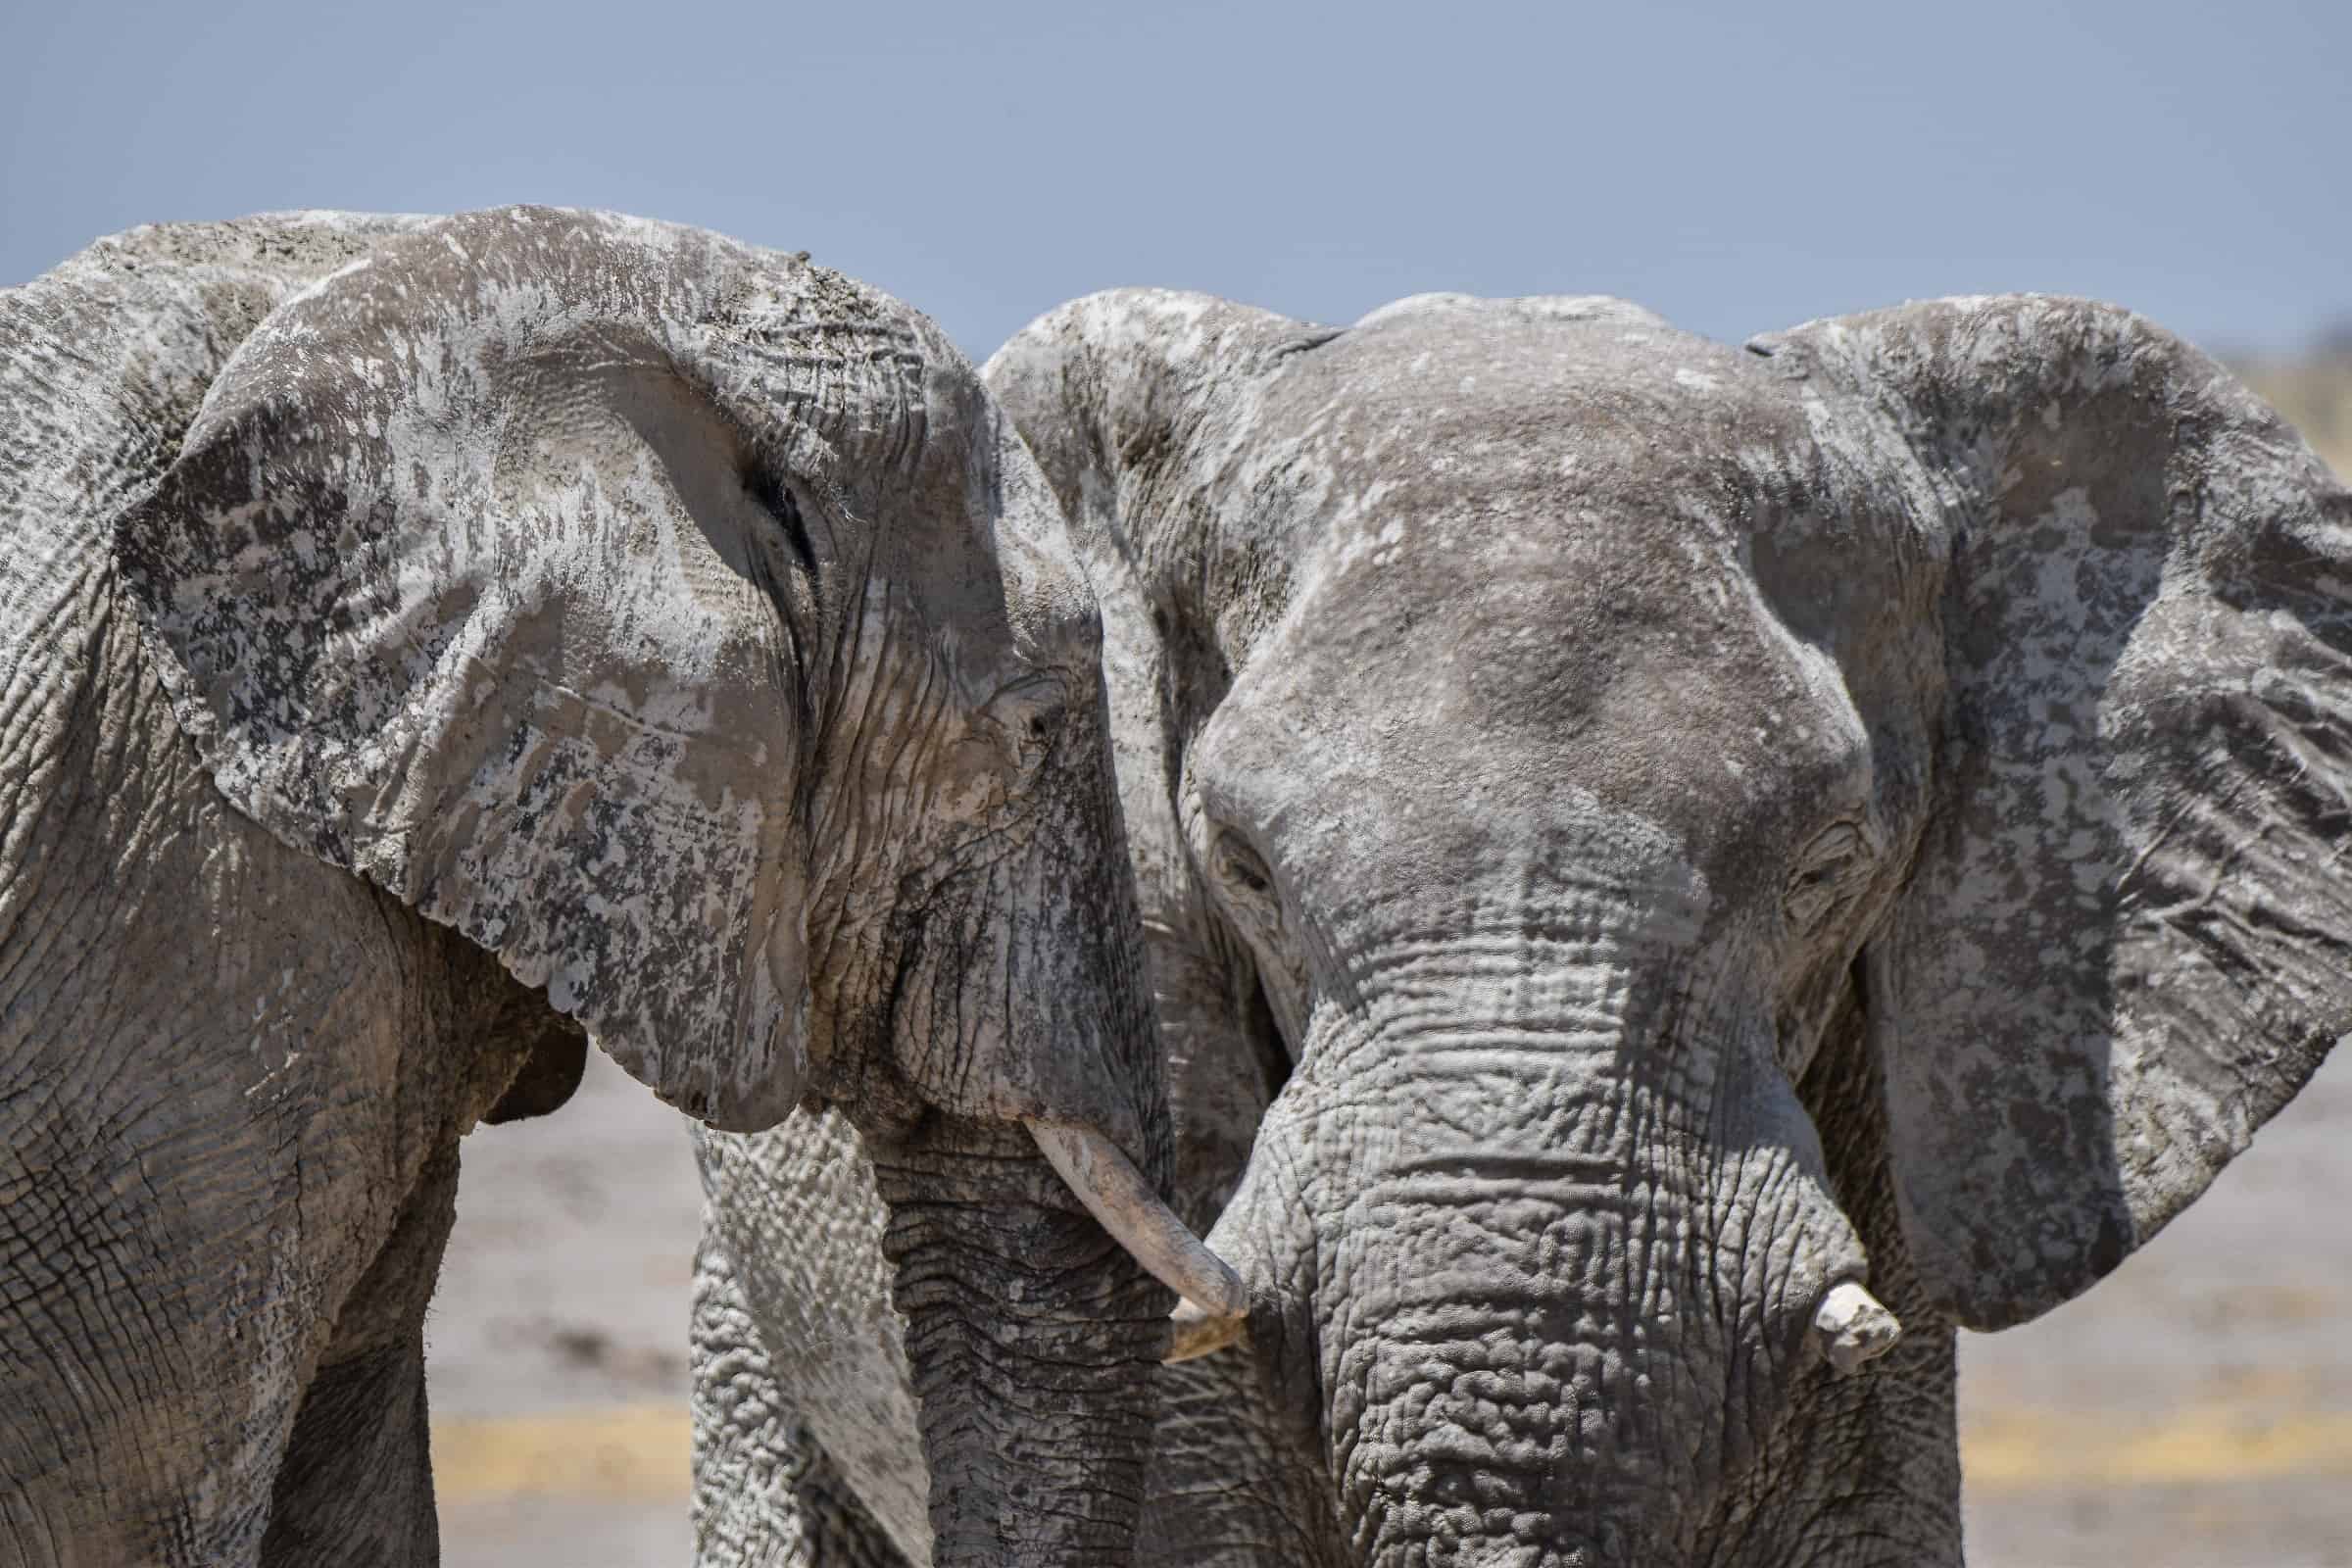 etosha national park wildlife namibia elephants